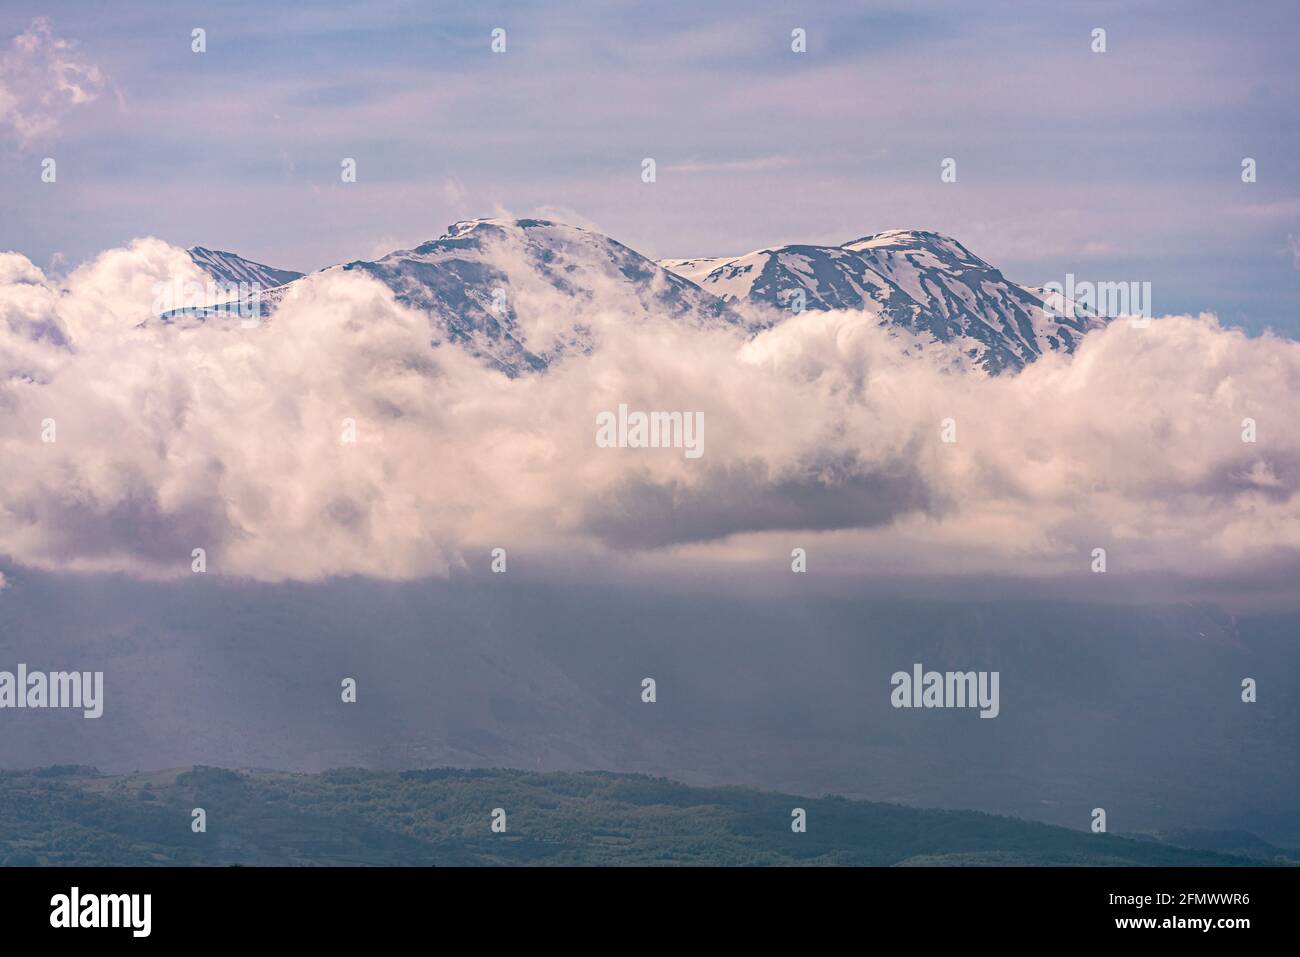 Sommets enneigés de la chaîne de montagnes de Maiella au-dessus des nuages. Le geopark de Maiella. Parc national de Maiella, Abruzzes, Italie, europe Banque D'Images